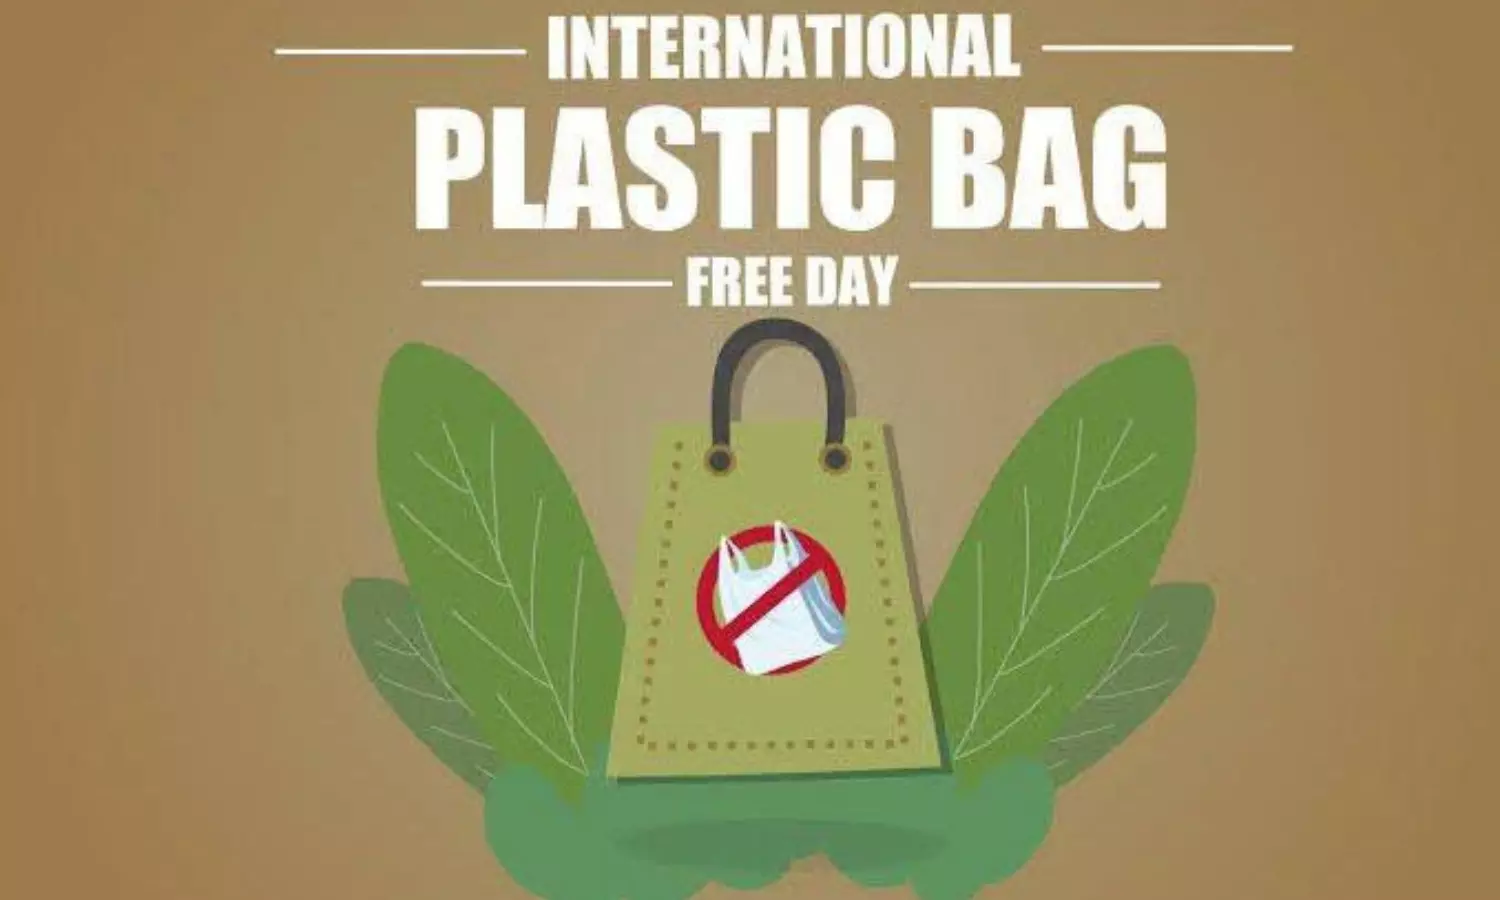 हर साल 3 जुलाई को मनाते हैं International Plastic Bag Free Day,इस कारण से हुई थी इसे मनाने की शुरुआत